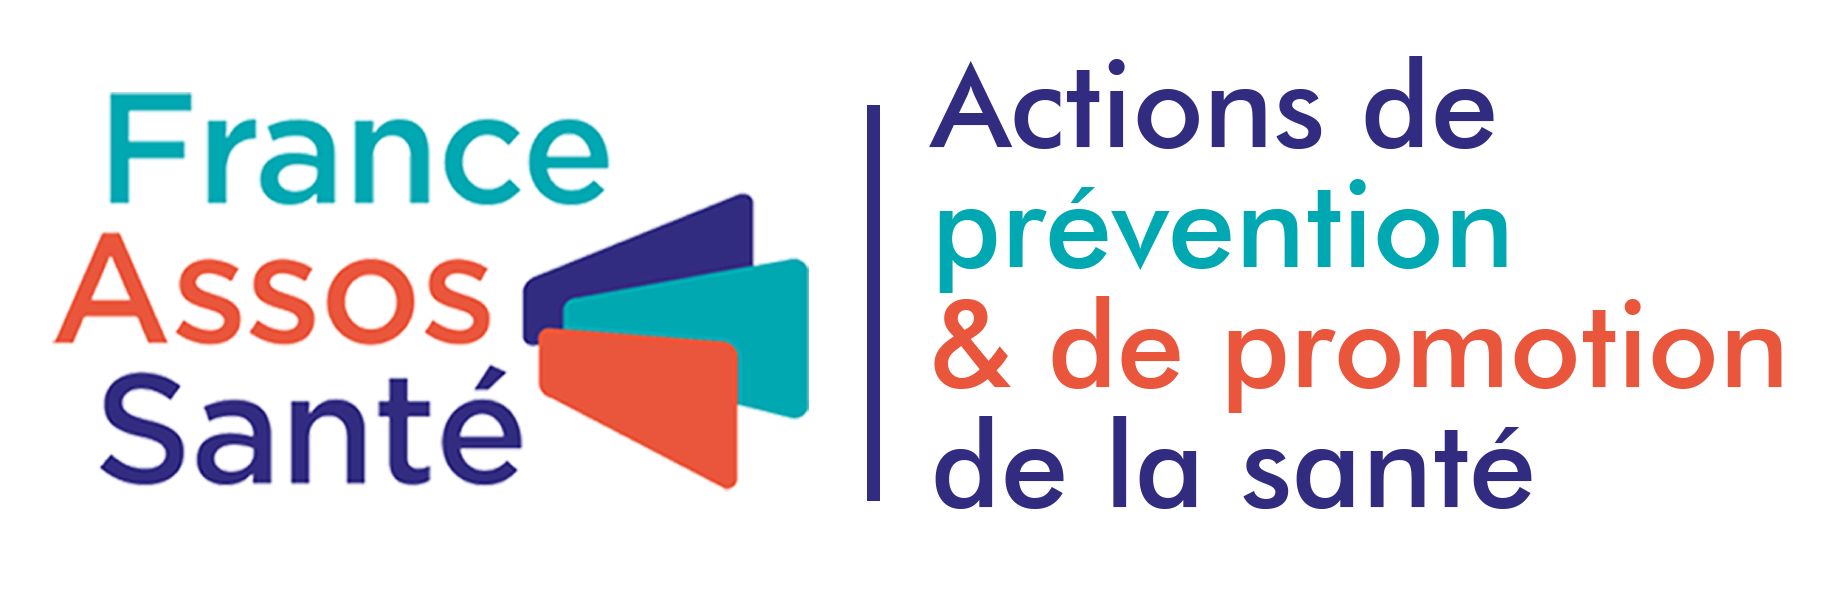 Actions de prévention & de promotion de la santé des associations de France Assos Santé